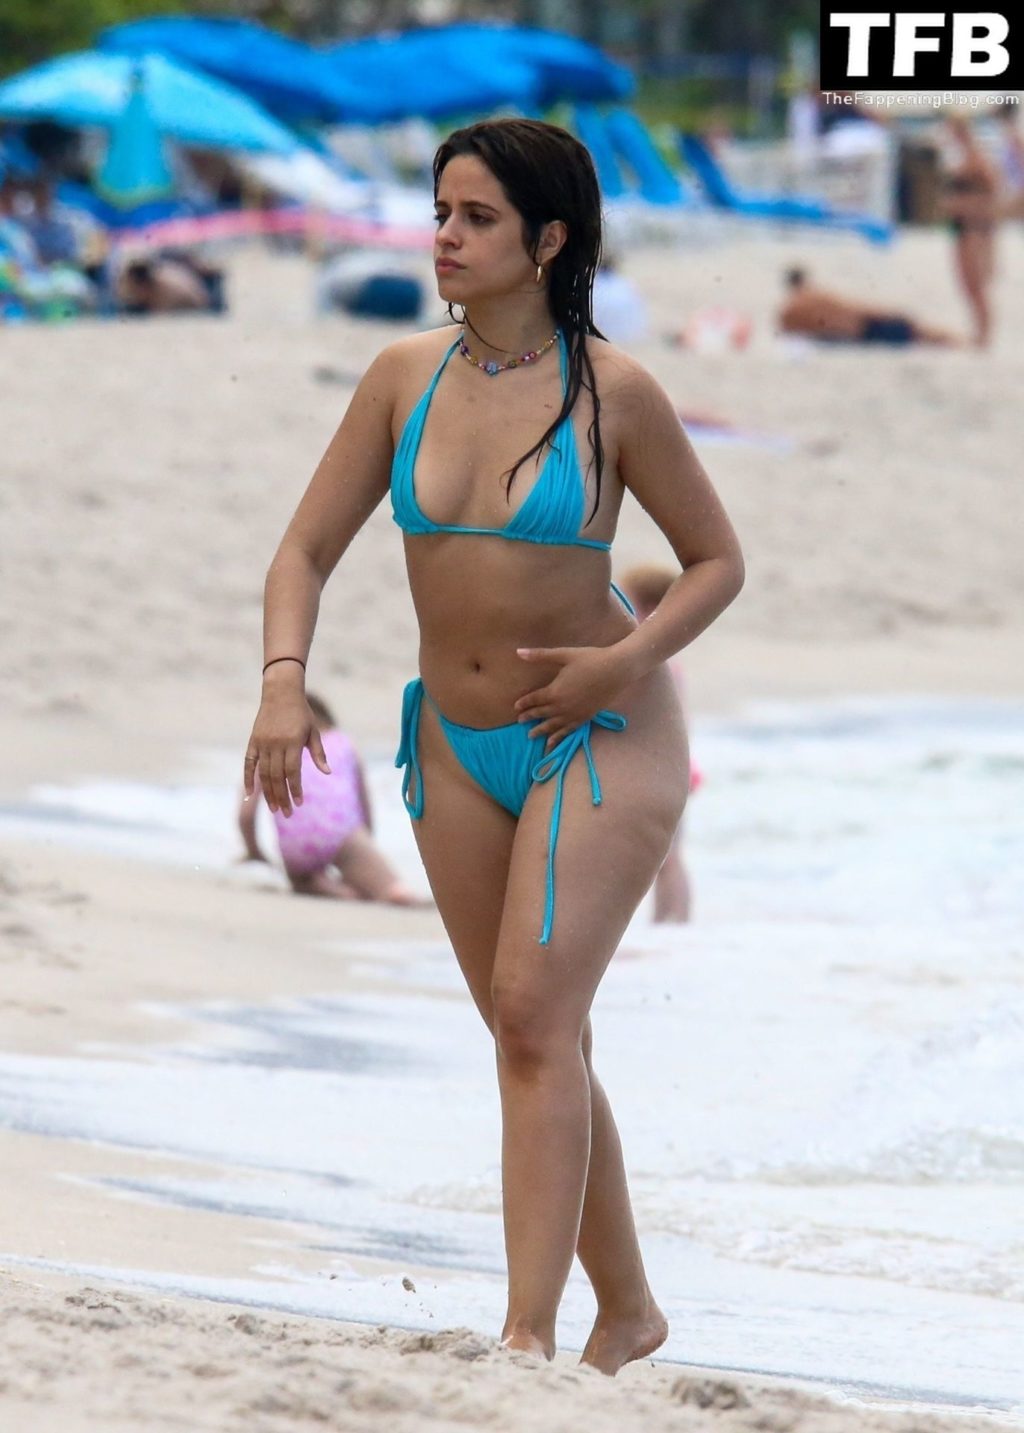 Camila Cabello Sexy The Fappening Blog 17 2 1024x1433 - Camila Cabello Enjoys a Beach Day with Her Girls (38 Photos)